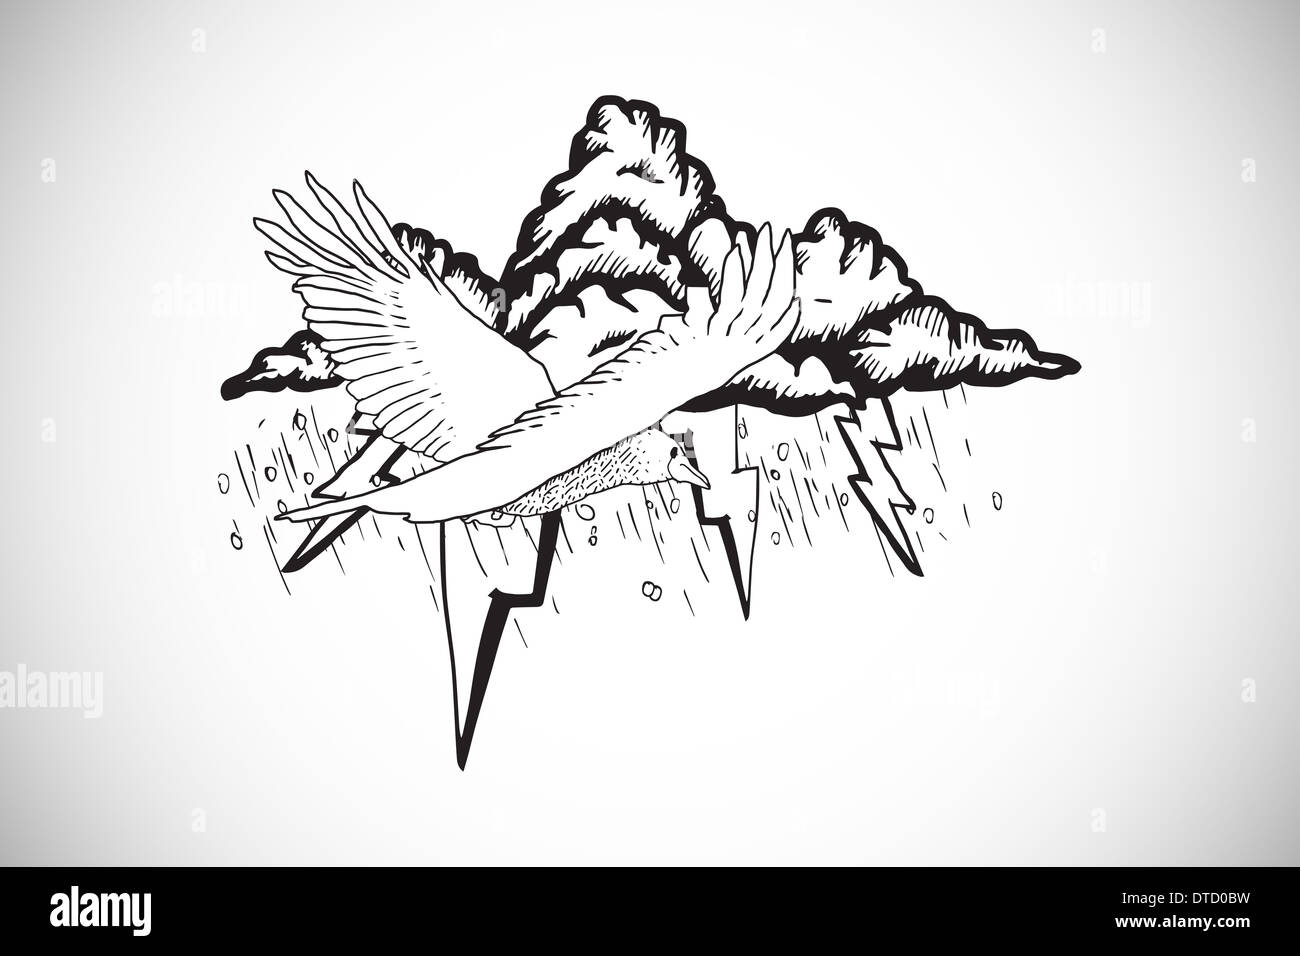 Imagen compuesta de pájaro volando en una tormenta doodle Foto de stock